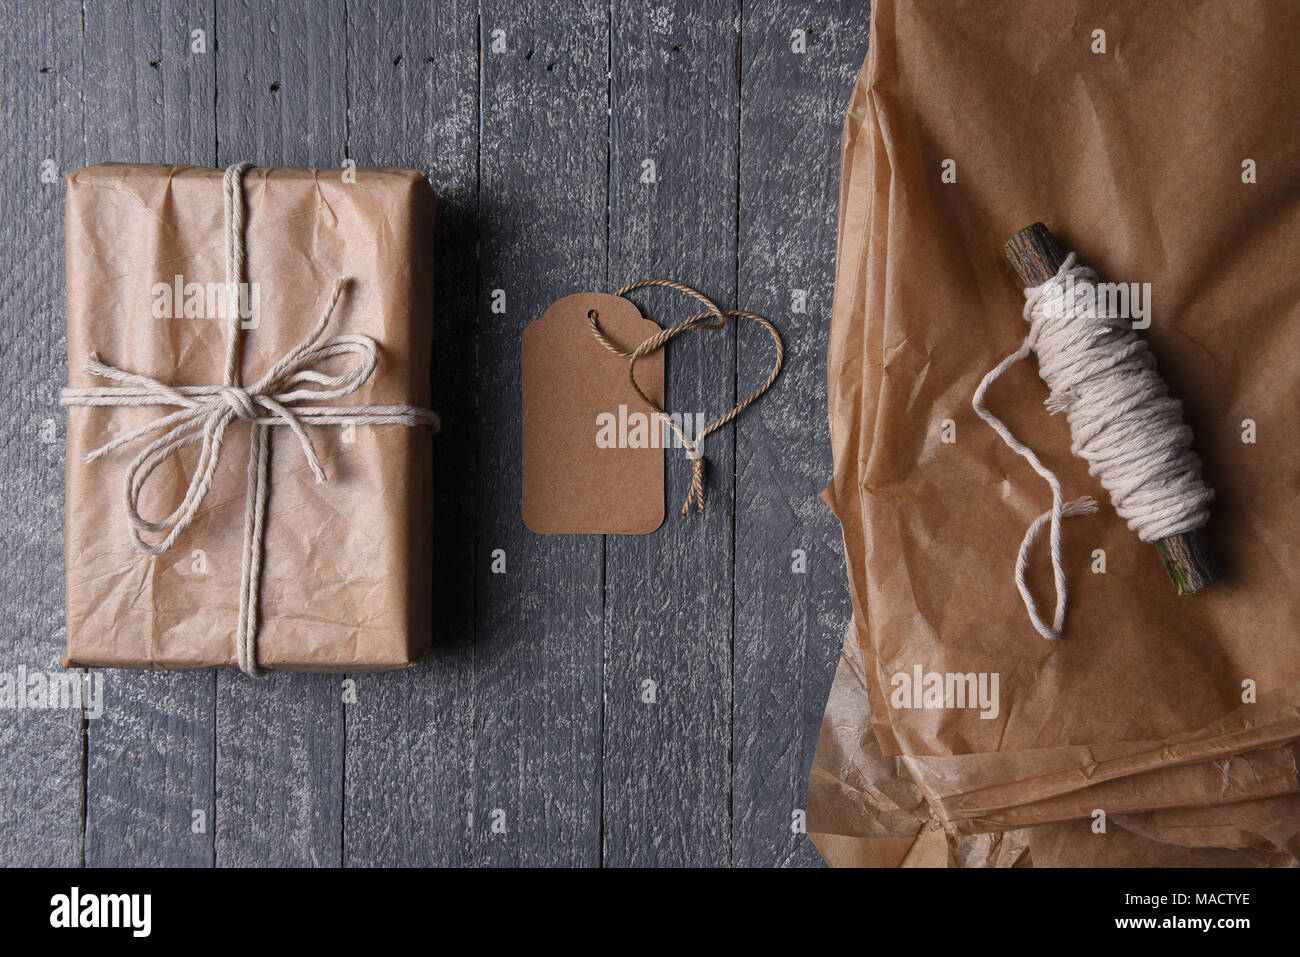 High angle shot de plain brown enveloppé dans du papier cadeau de Noël avec tag vierge et du papier supplémentaire et de la ficelle. Banque D'Images